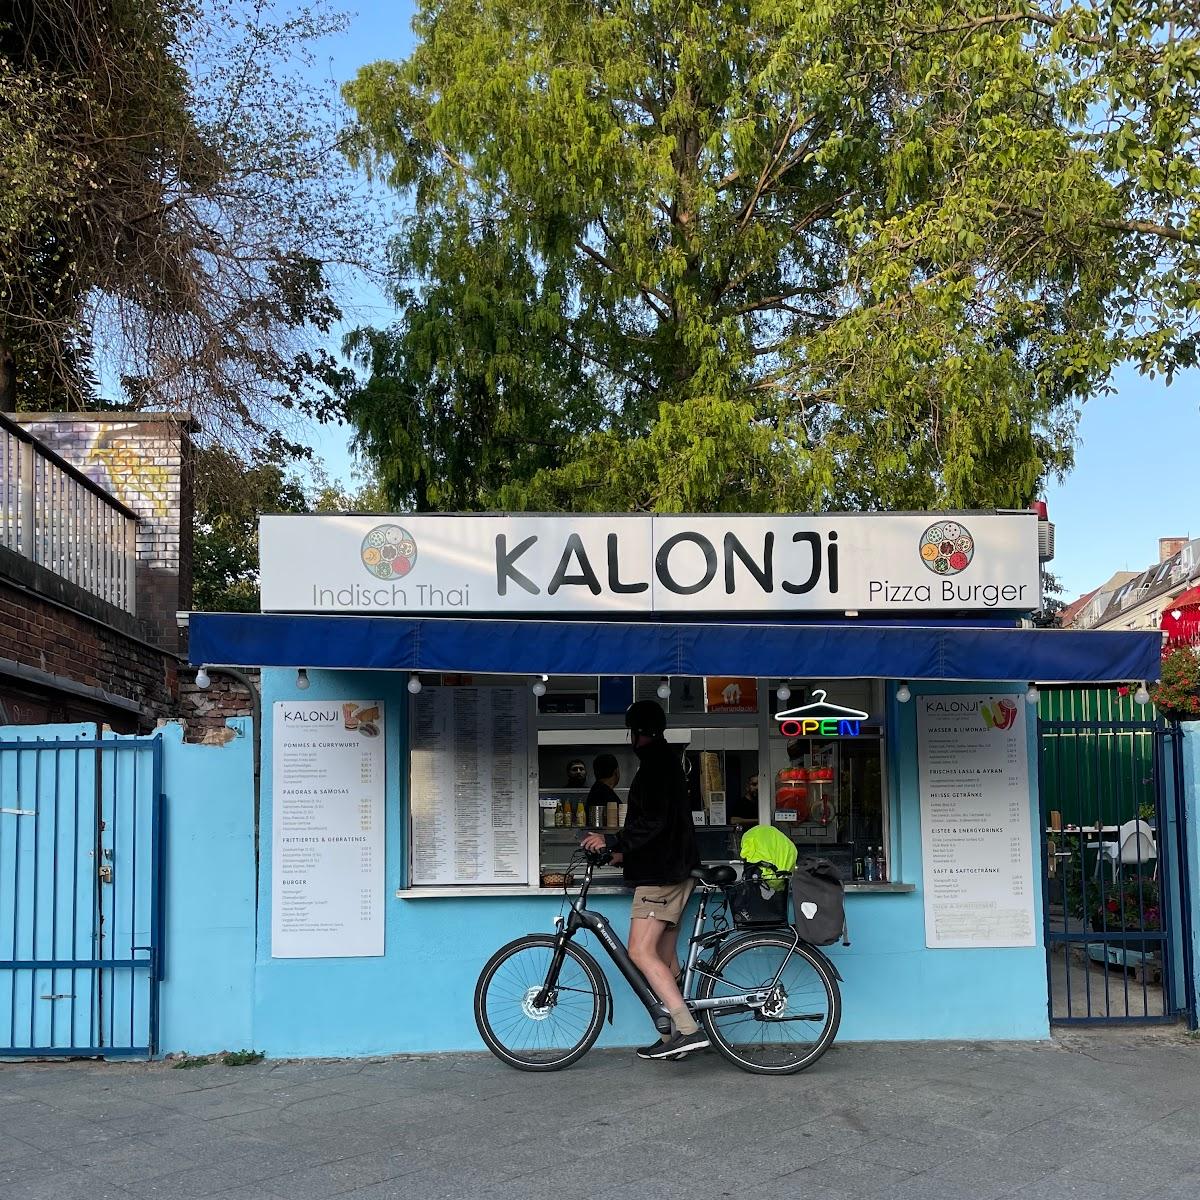 Restaurant "Kalonji" in Berlin